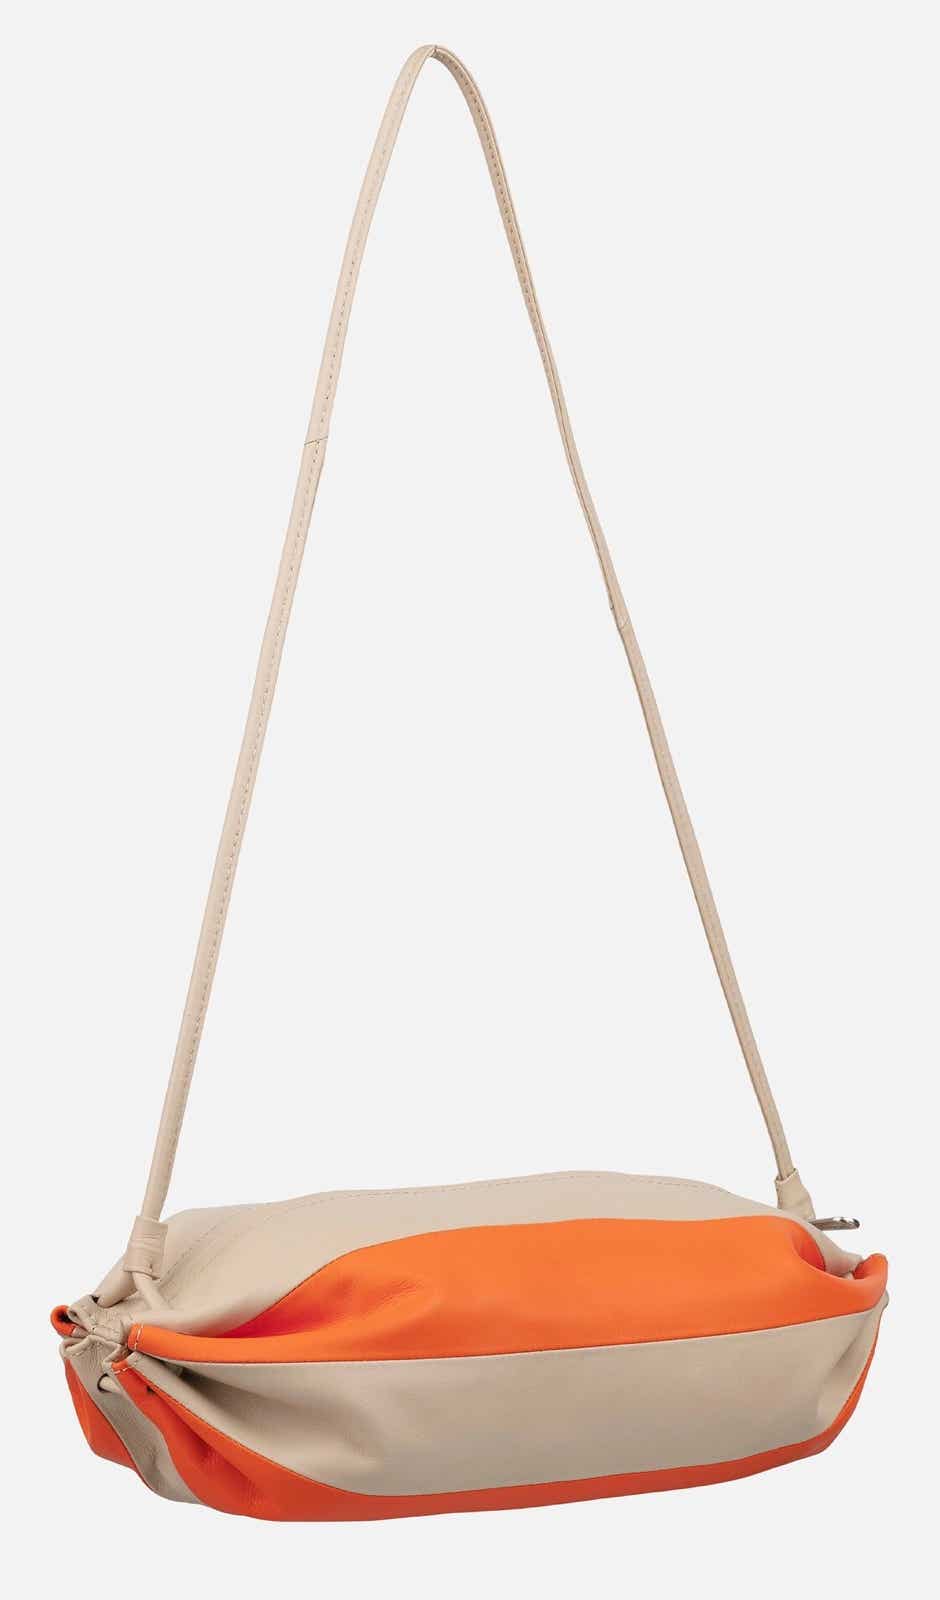 Karla Multi shoulder bag – 13 x 35 x 19 cm – twocolor leather